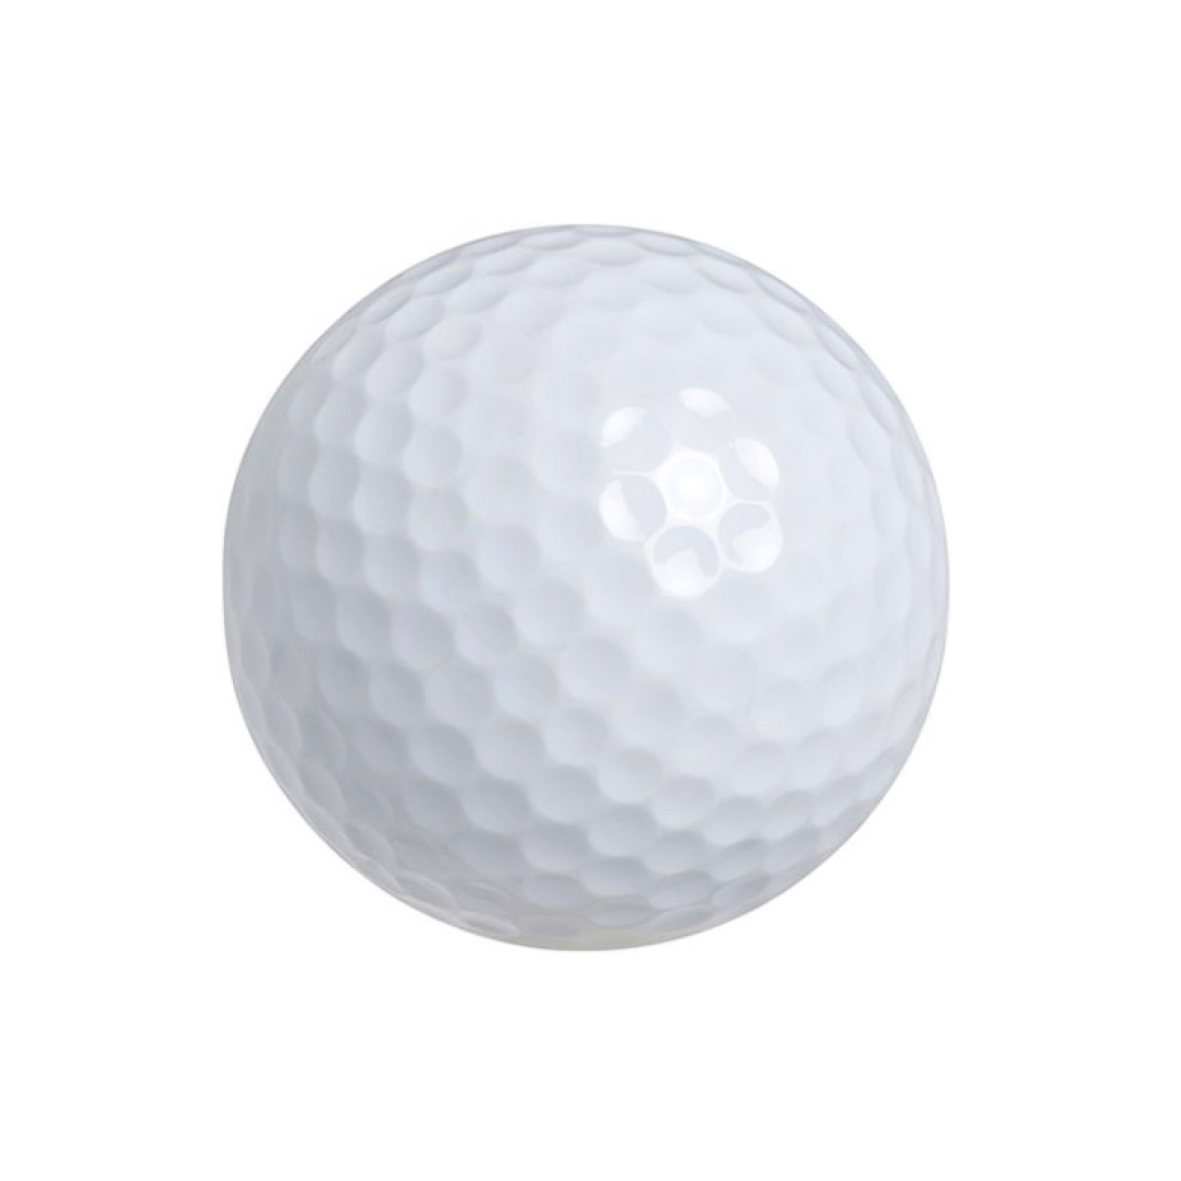 Golf Balls - Slater Gartrell Sports